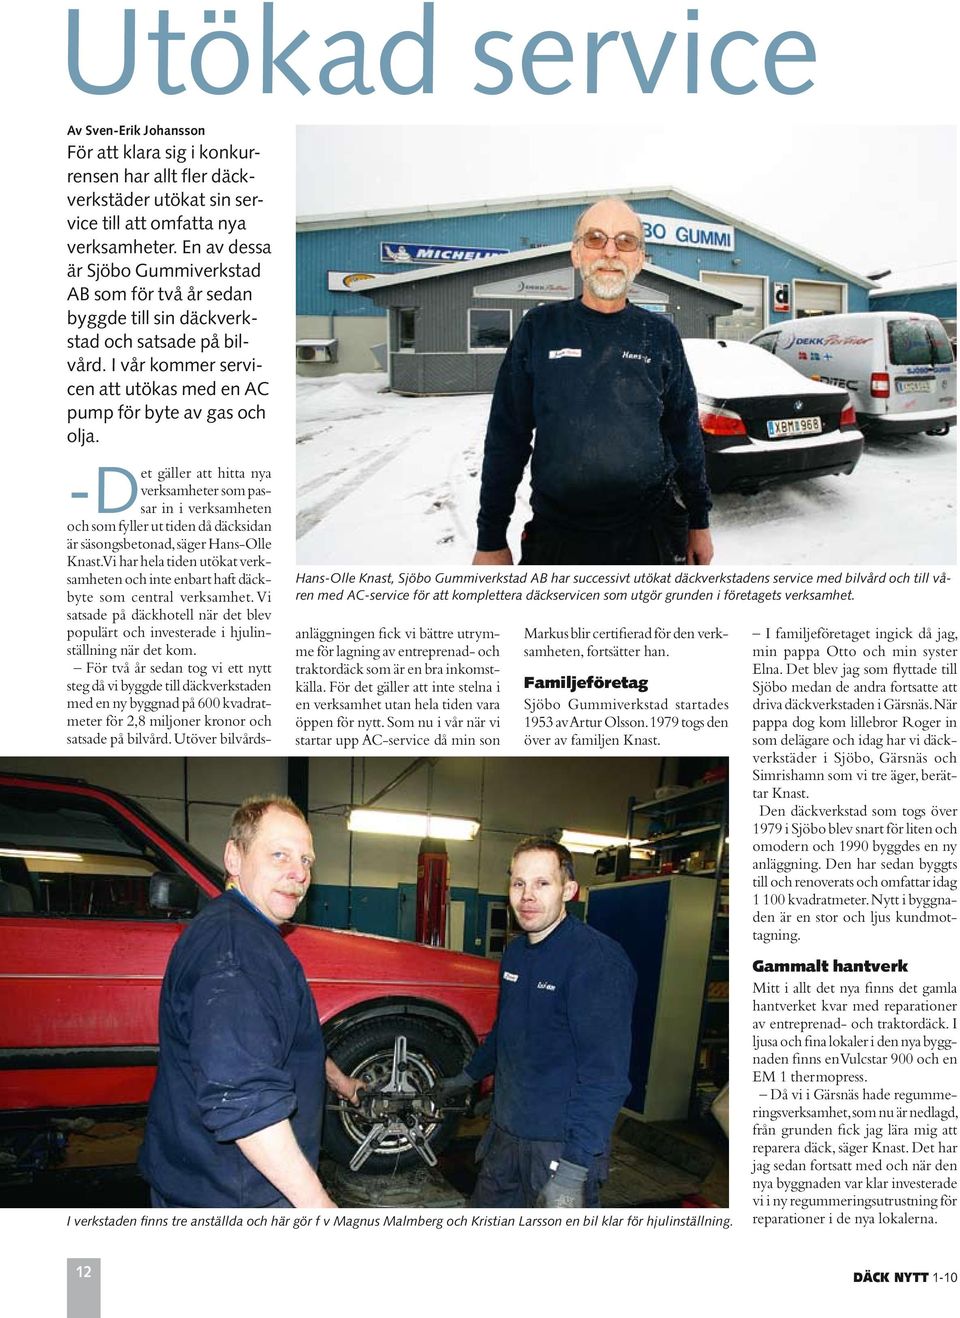 Hans-Olle Knast, Sjöbo Gummiverkstad AB har successivt utökat däckverkstadens service med bilvård och till våren med AC-service för att komplettera däckservicen som utgör grunden i företagets